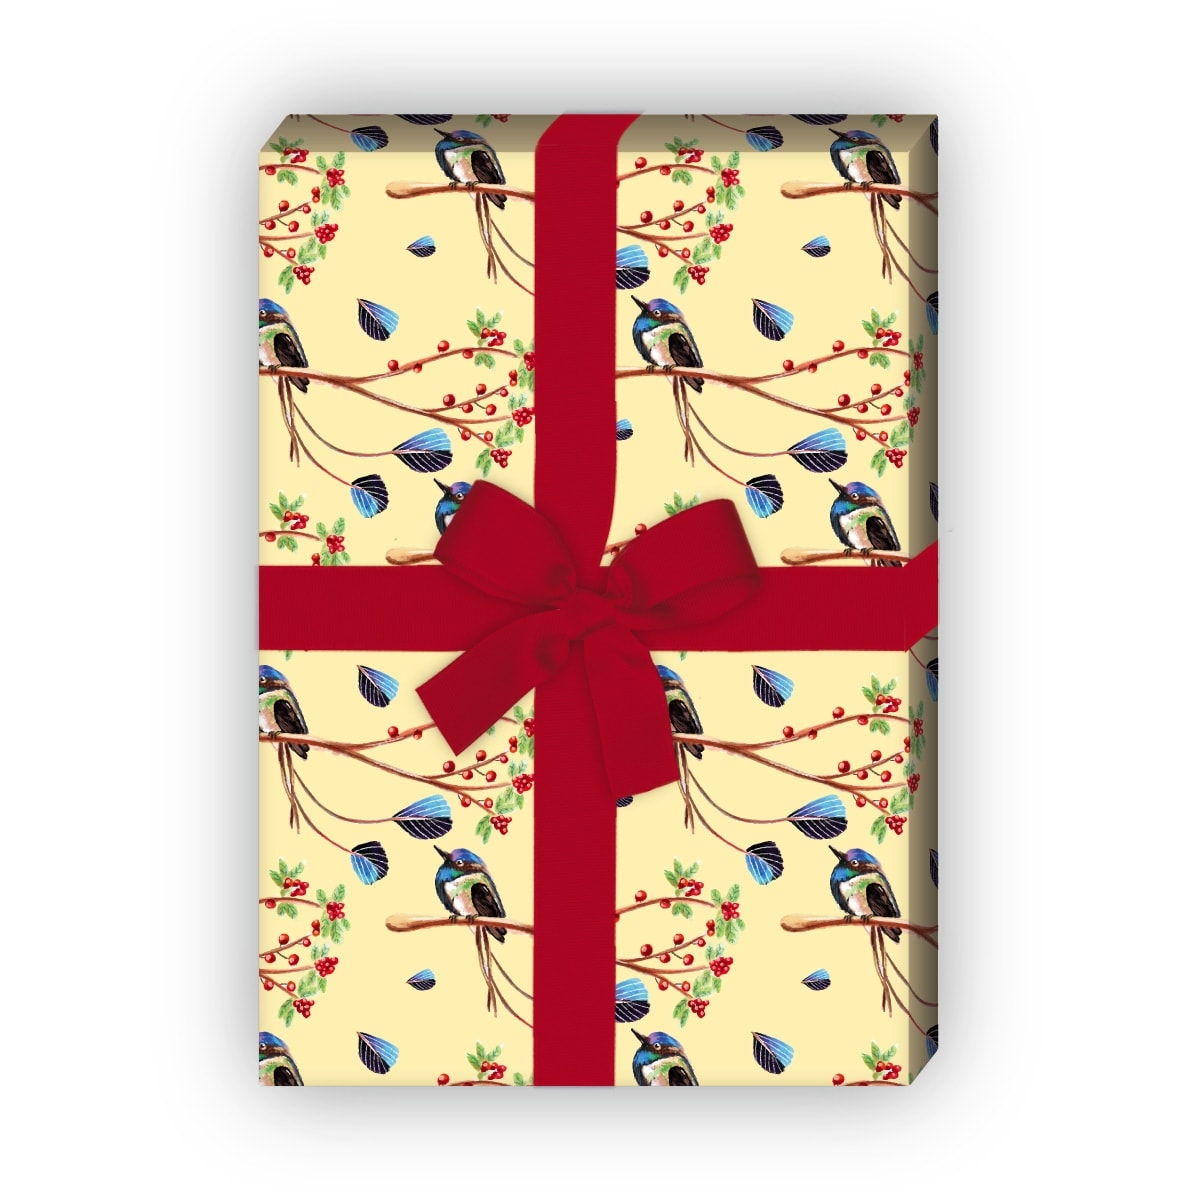 Kartenkaufrausch: Edles gemaltes Geschenkpapier mit aus unserer Tier Papeterie in gelb